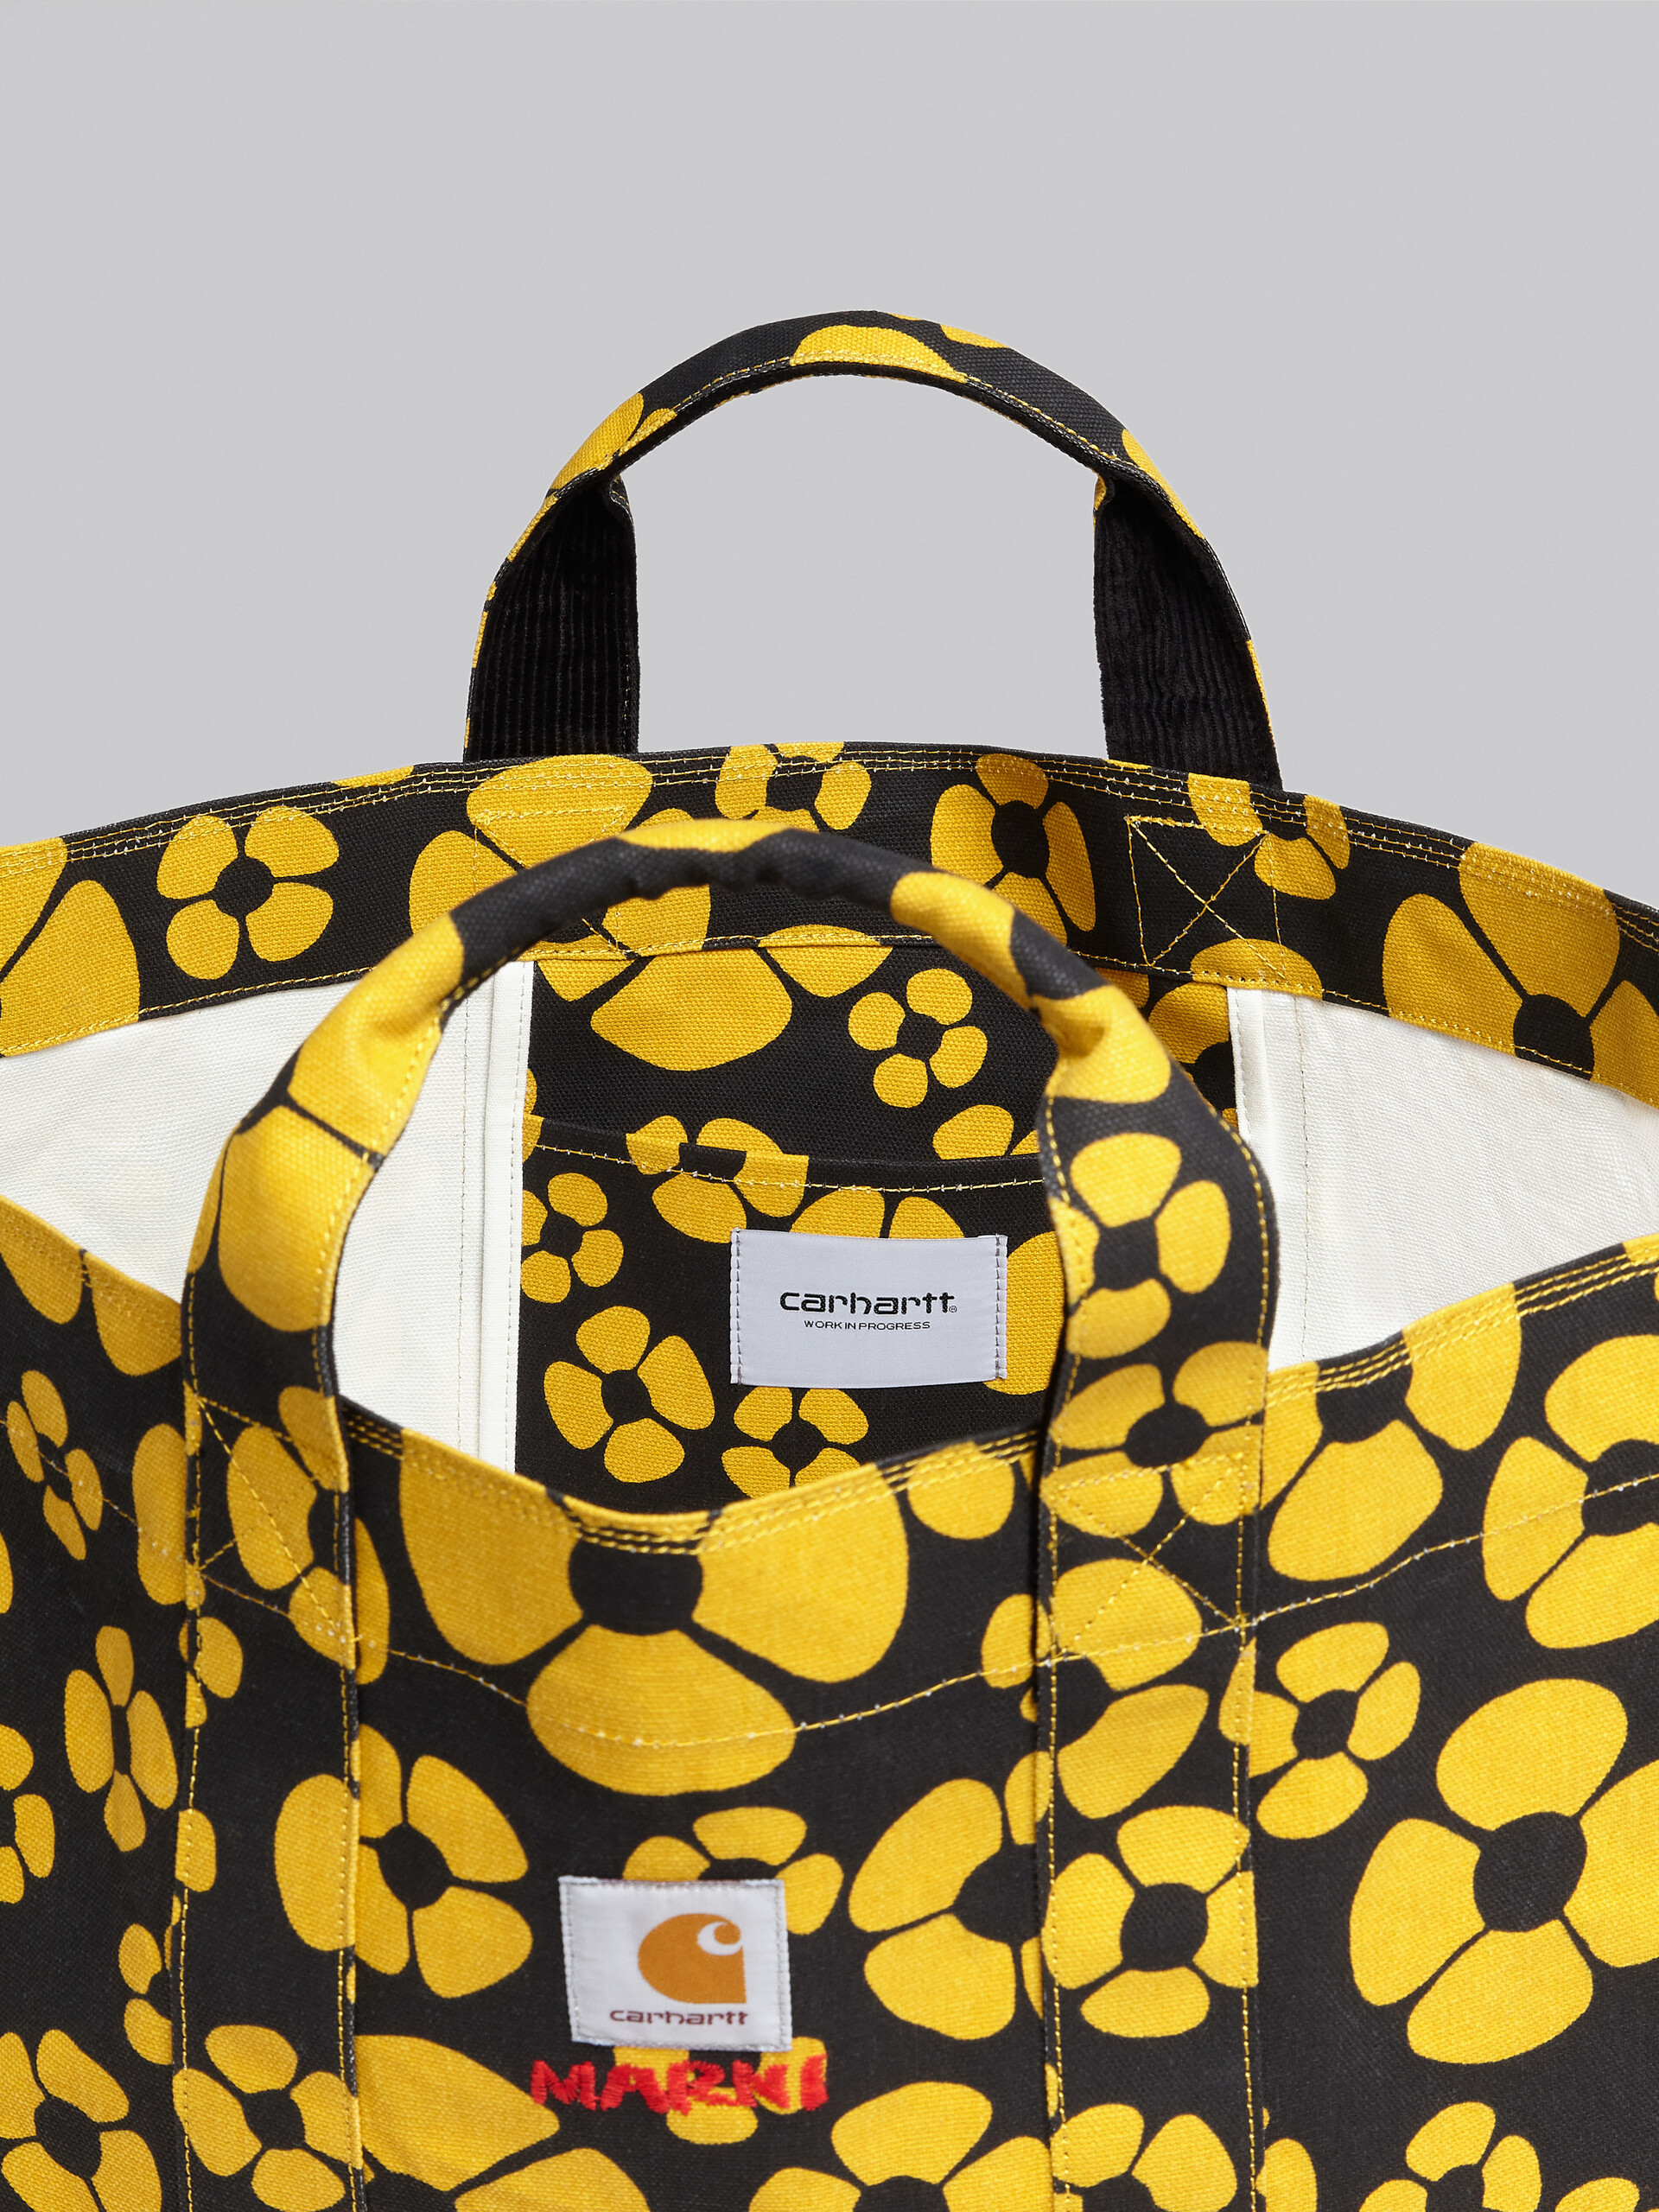 MARNI x CARHARTT WIP - yellow shopper - Shopping Bags - Image 4